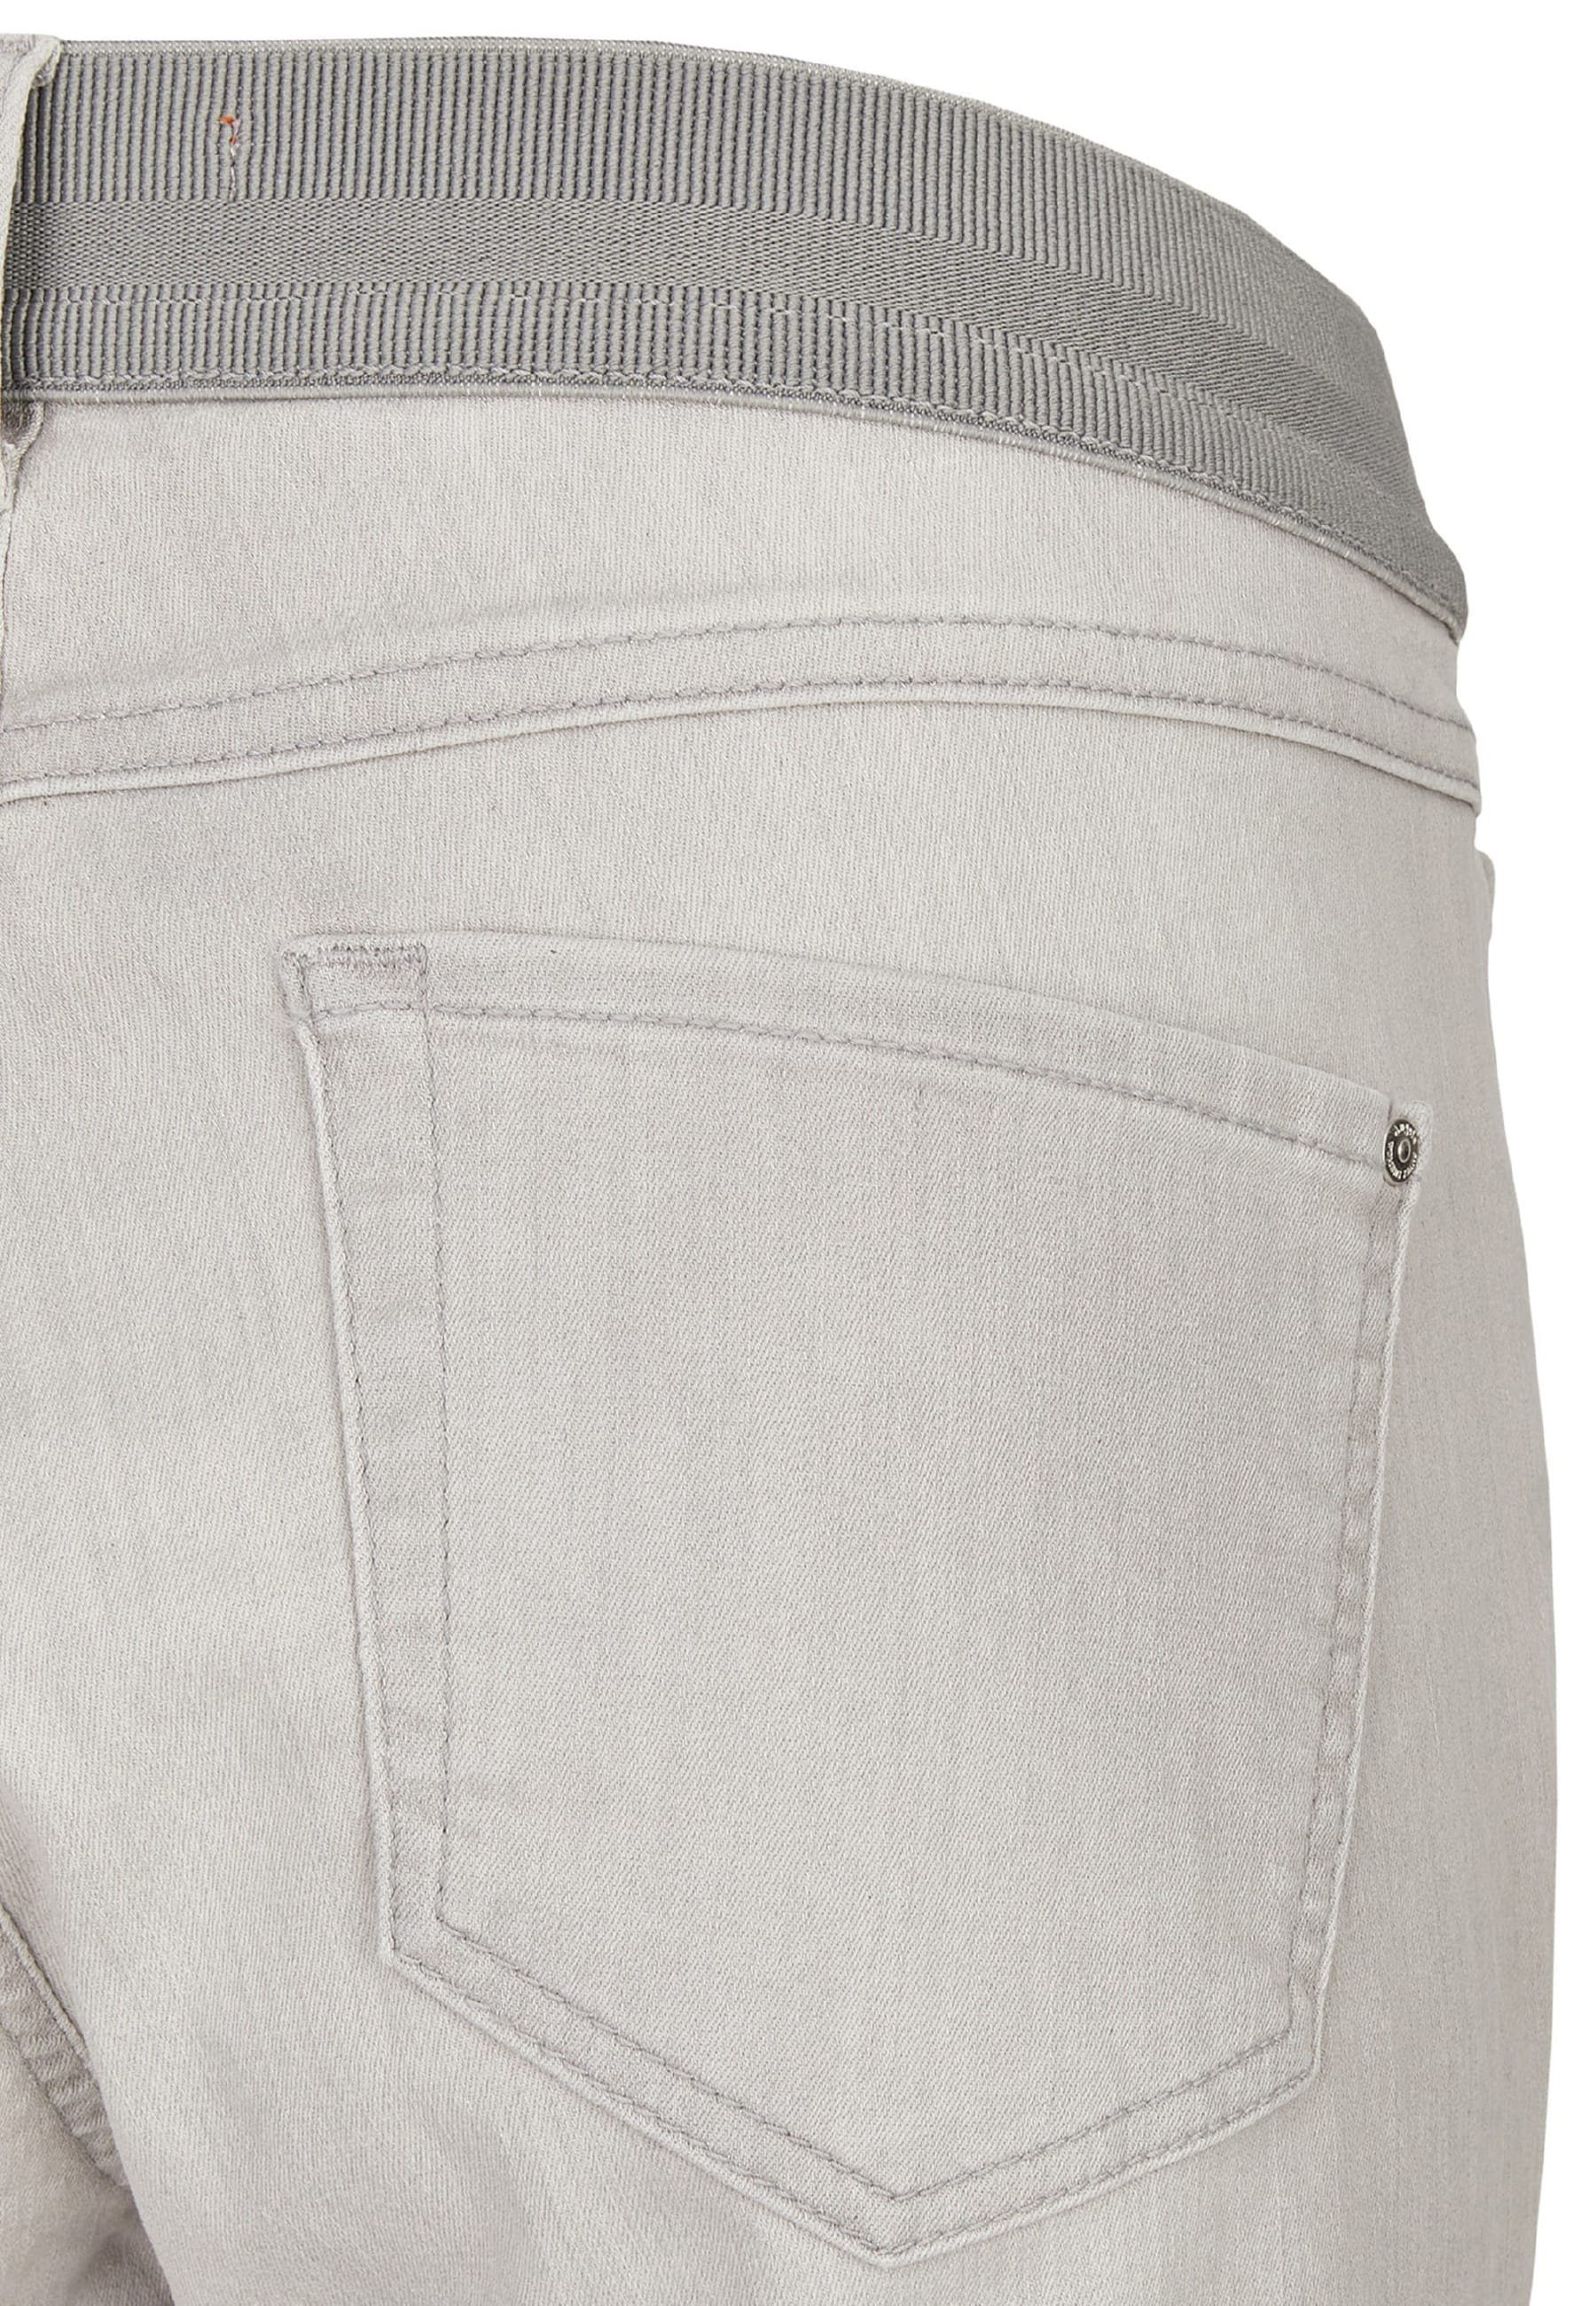 hellgrau Jeans klassischem Onesize Dehnbund-Jeans ANGELS Kurze mit Capri Design